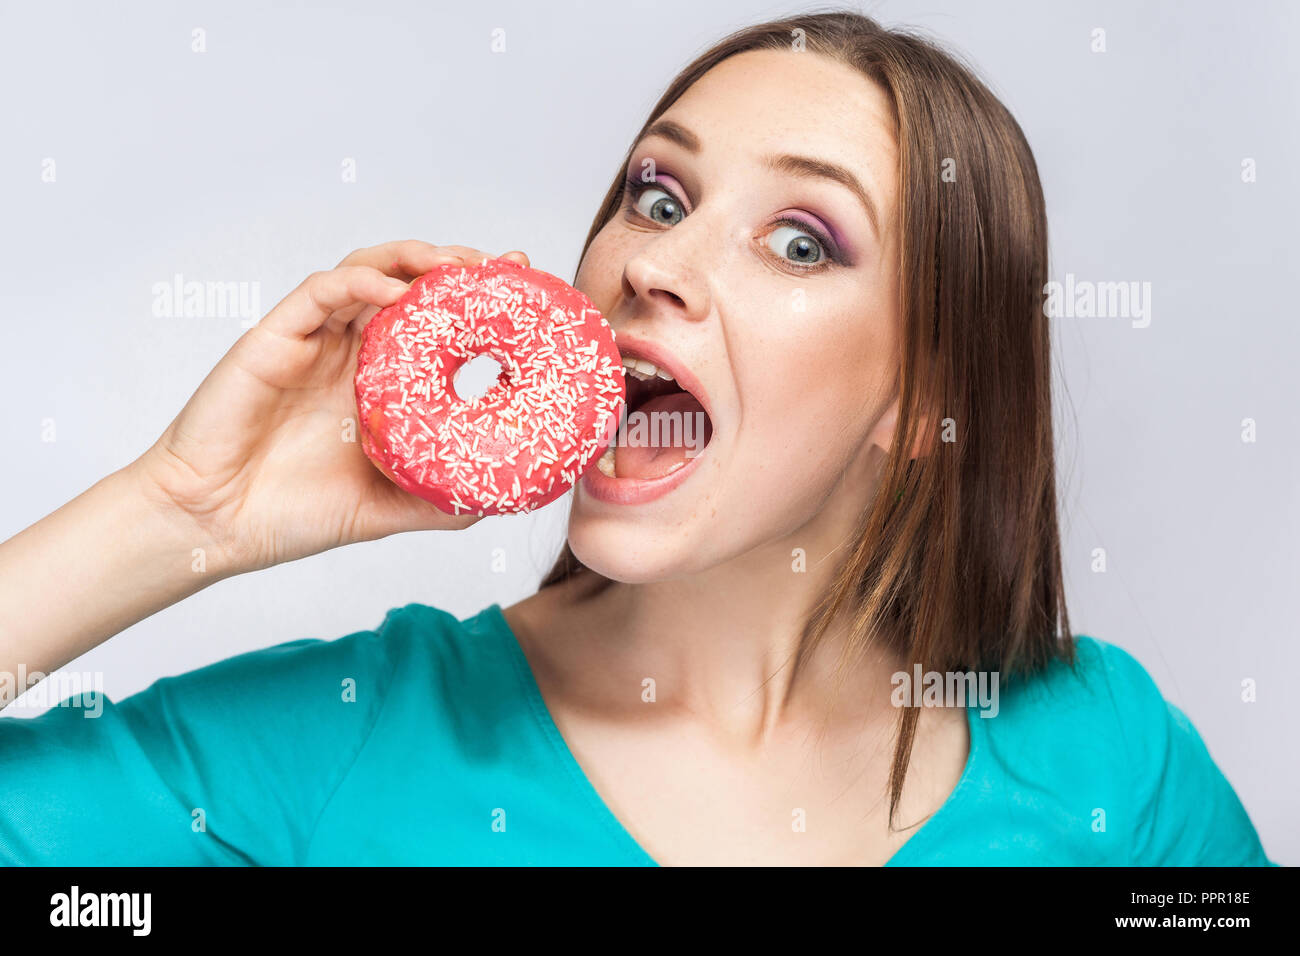 Portrait von hungrigen jungen schönen Mädchen in blau Bluse, die hielten und versuchen, grosse rosa Donut mit offenen Mund und großen Augen in Grau zu beißen backgr Stockfoto